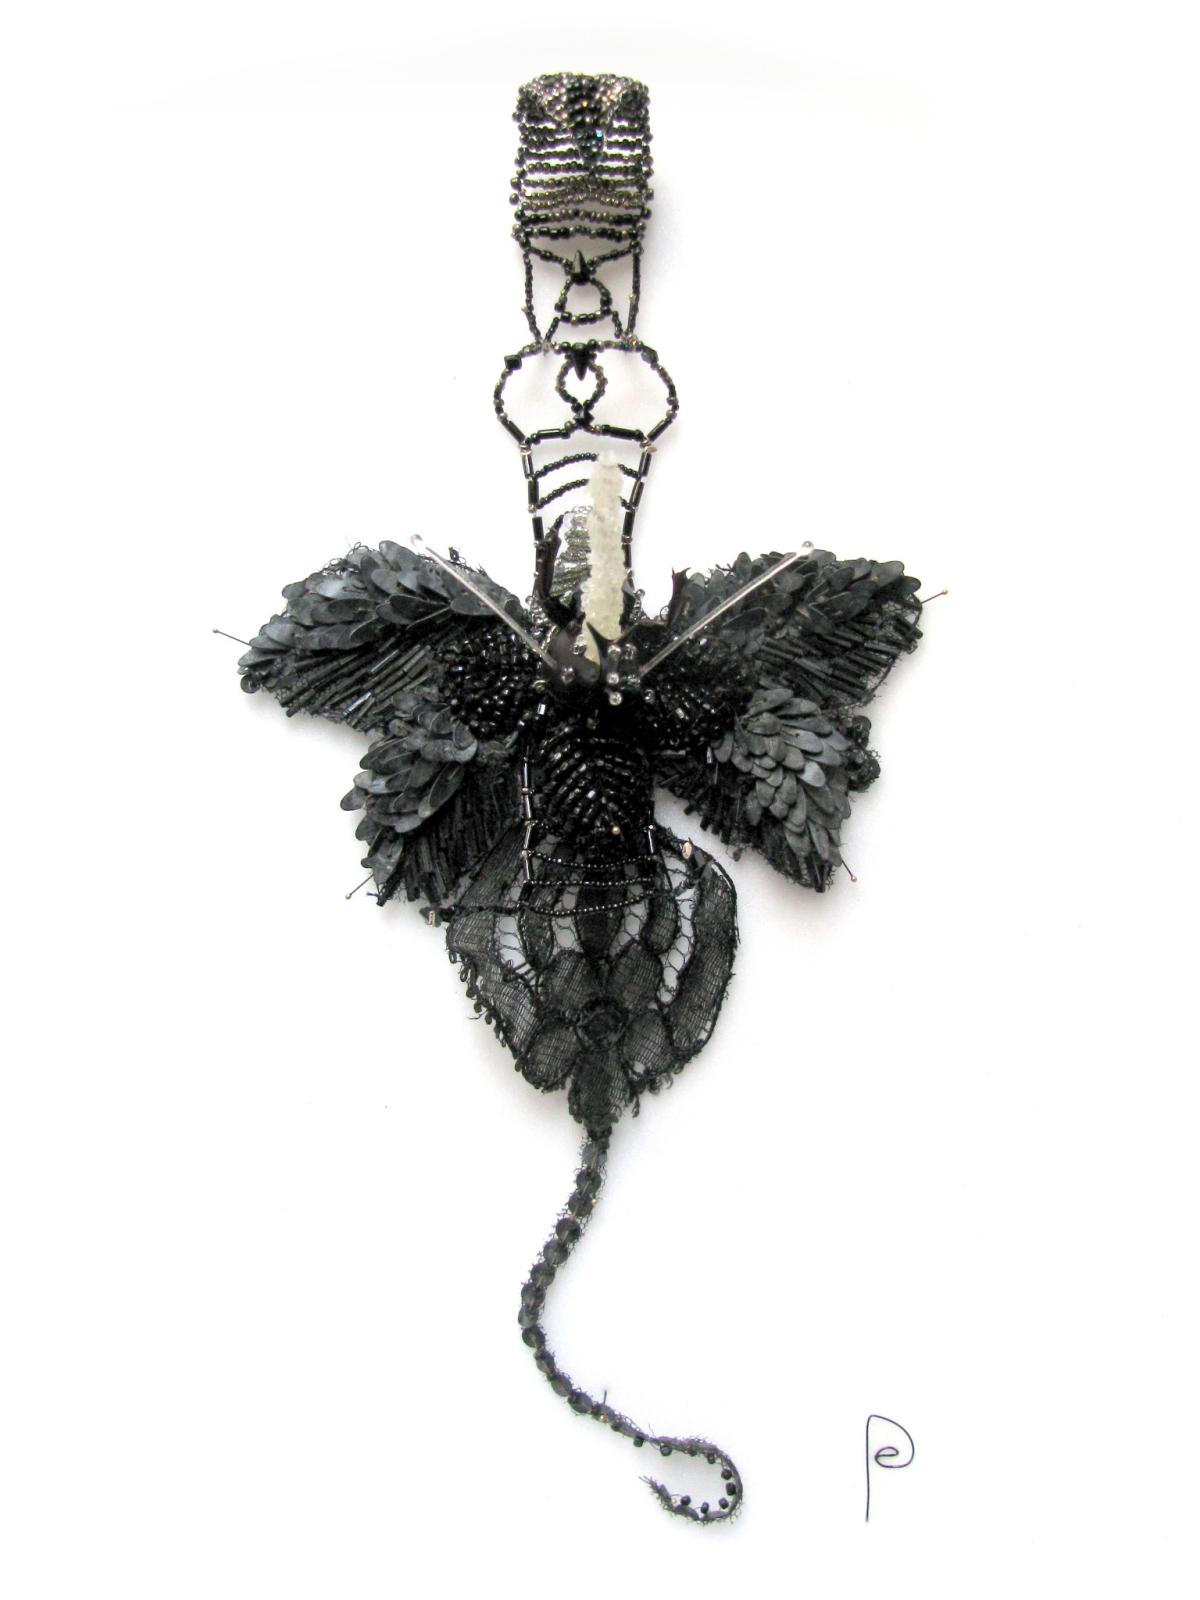 Scorpion, perles de jais et paillettes brodées et montées en résille sur fil de métal, 2015.  